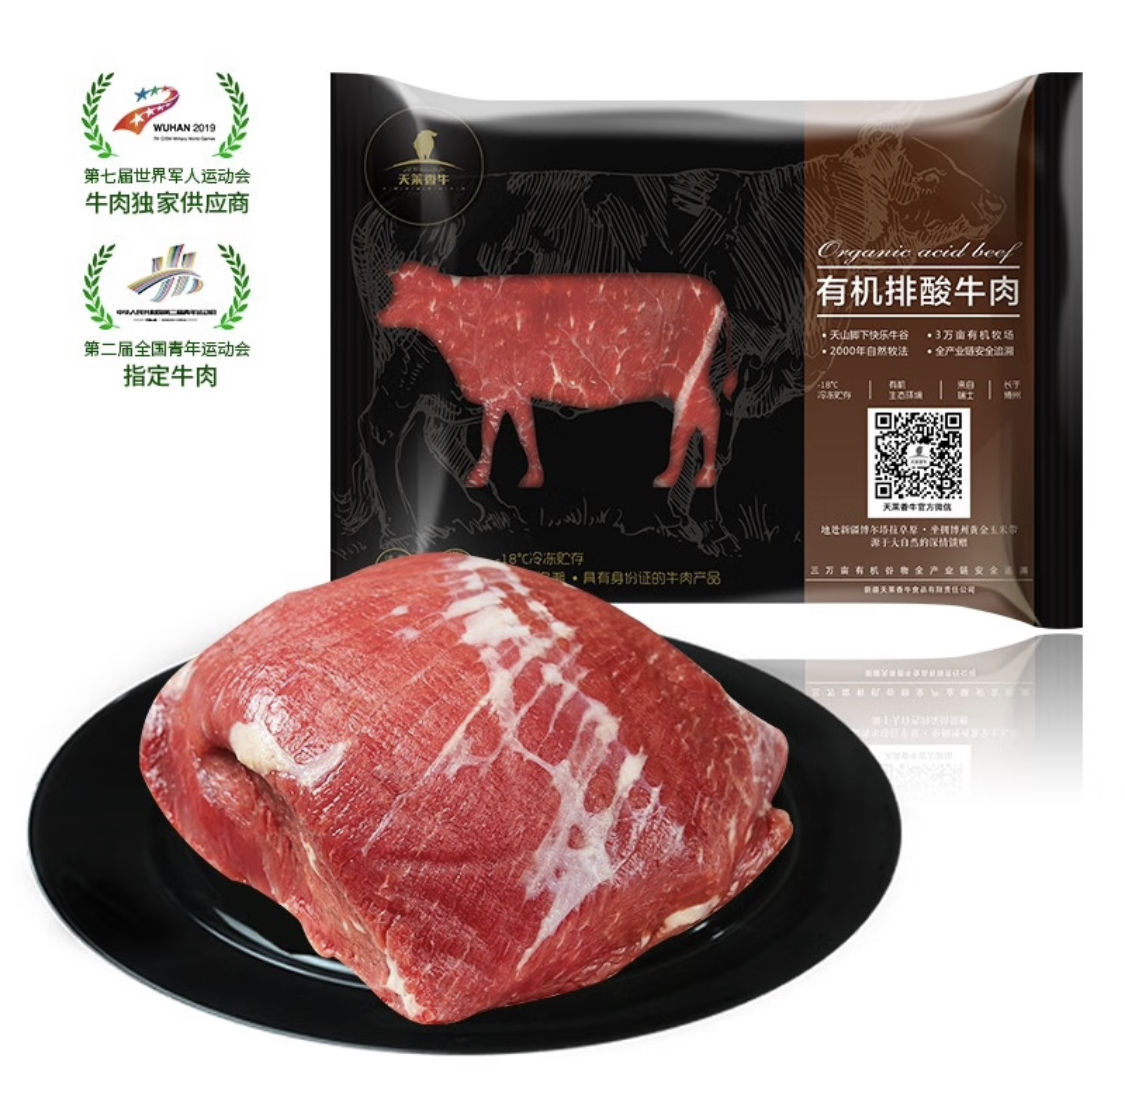 PLUS会员，需首购:天莱香牛 国产新疆 有机原切牛腿肉500g*2件+凑单 87.46元包